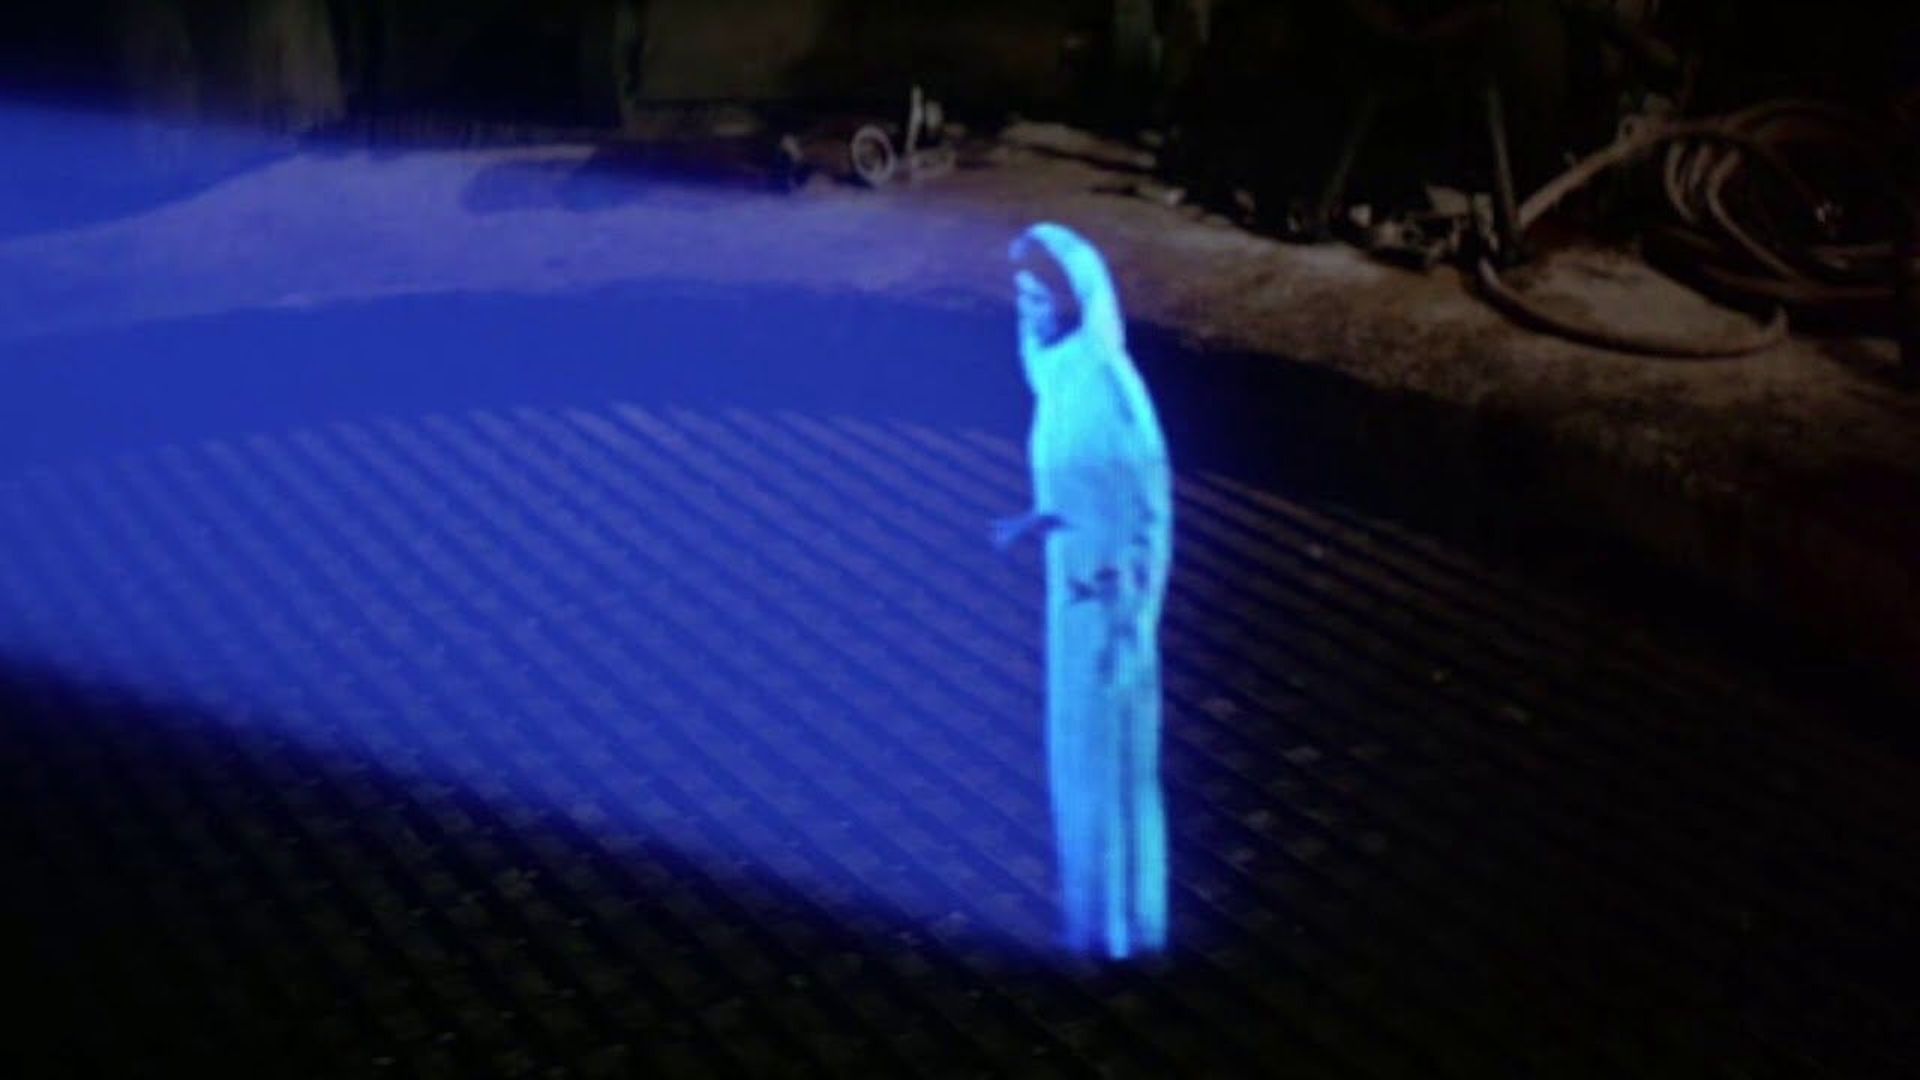 Les chercheurs comparent leur découverte à l'image holographique de la princesse Leia appelant au secours, que le petit droïde R2-D2 projette au sol dans le premier opus de la saga "Star Wars" (1977)...